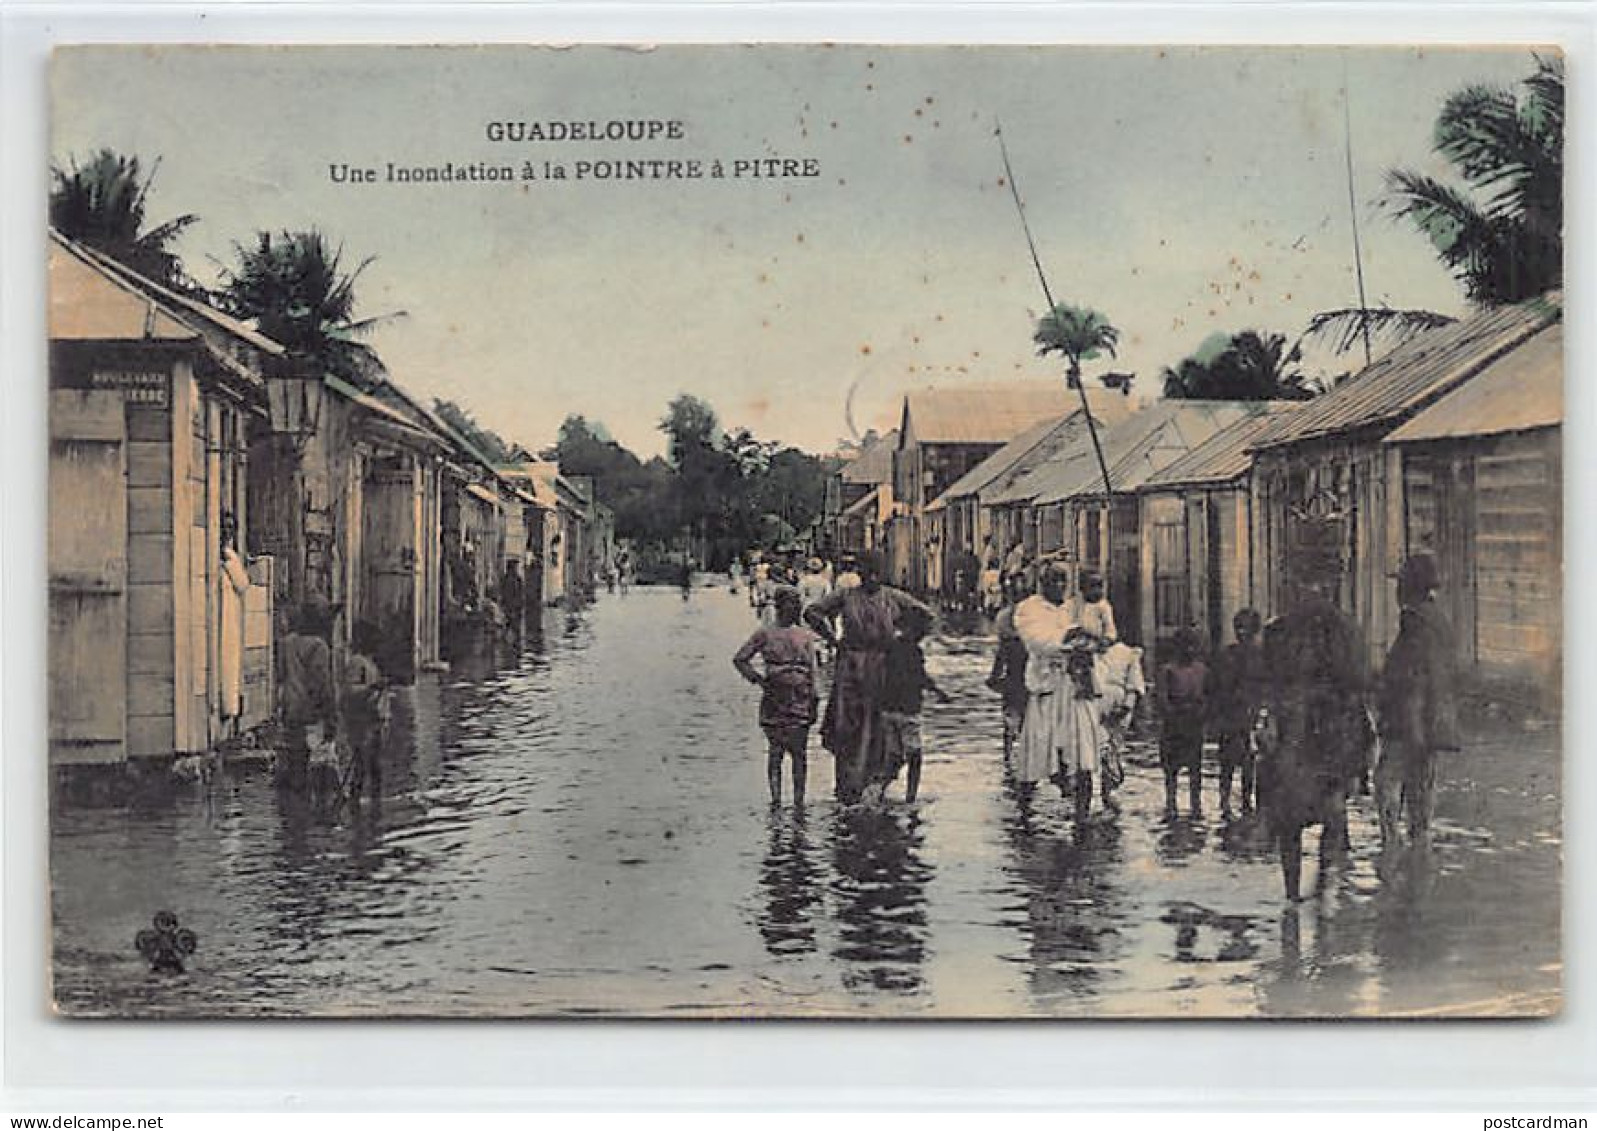 Guadeloupe - POINE à PITRE - Une Inondation - Ed. Charles Colas & Cie Aquarellée - Pointe A Pitre